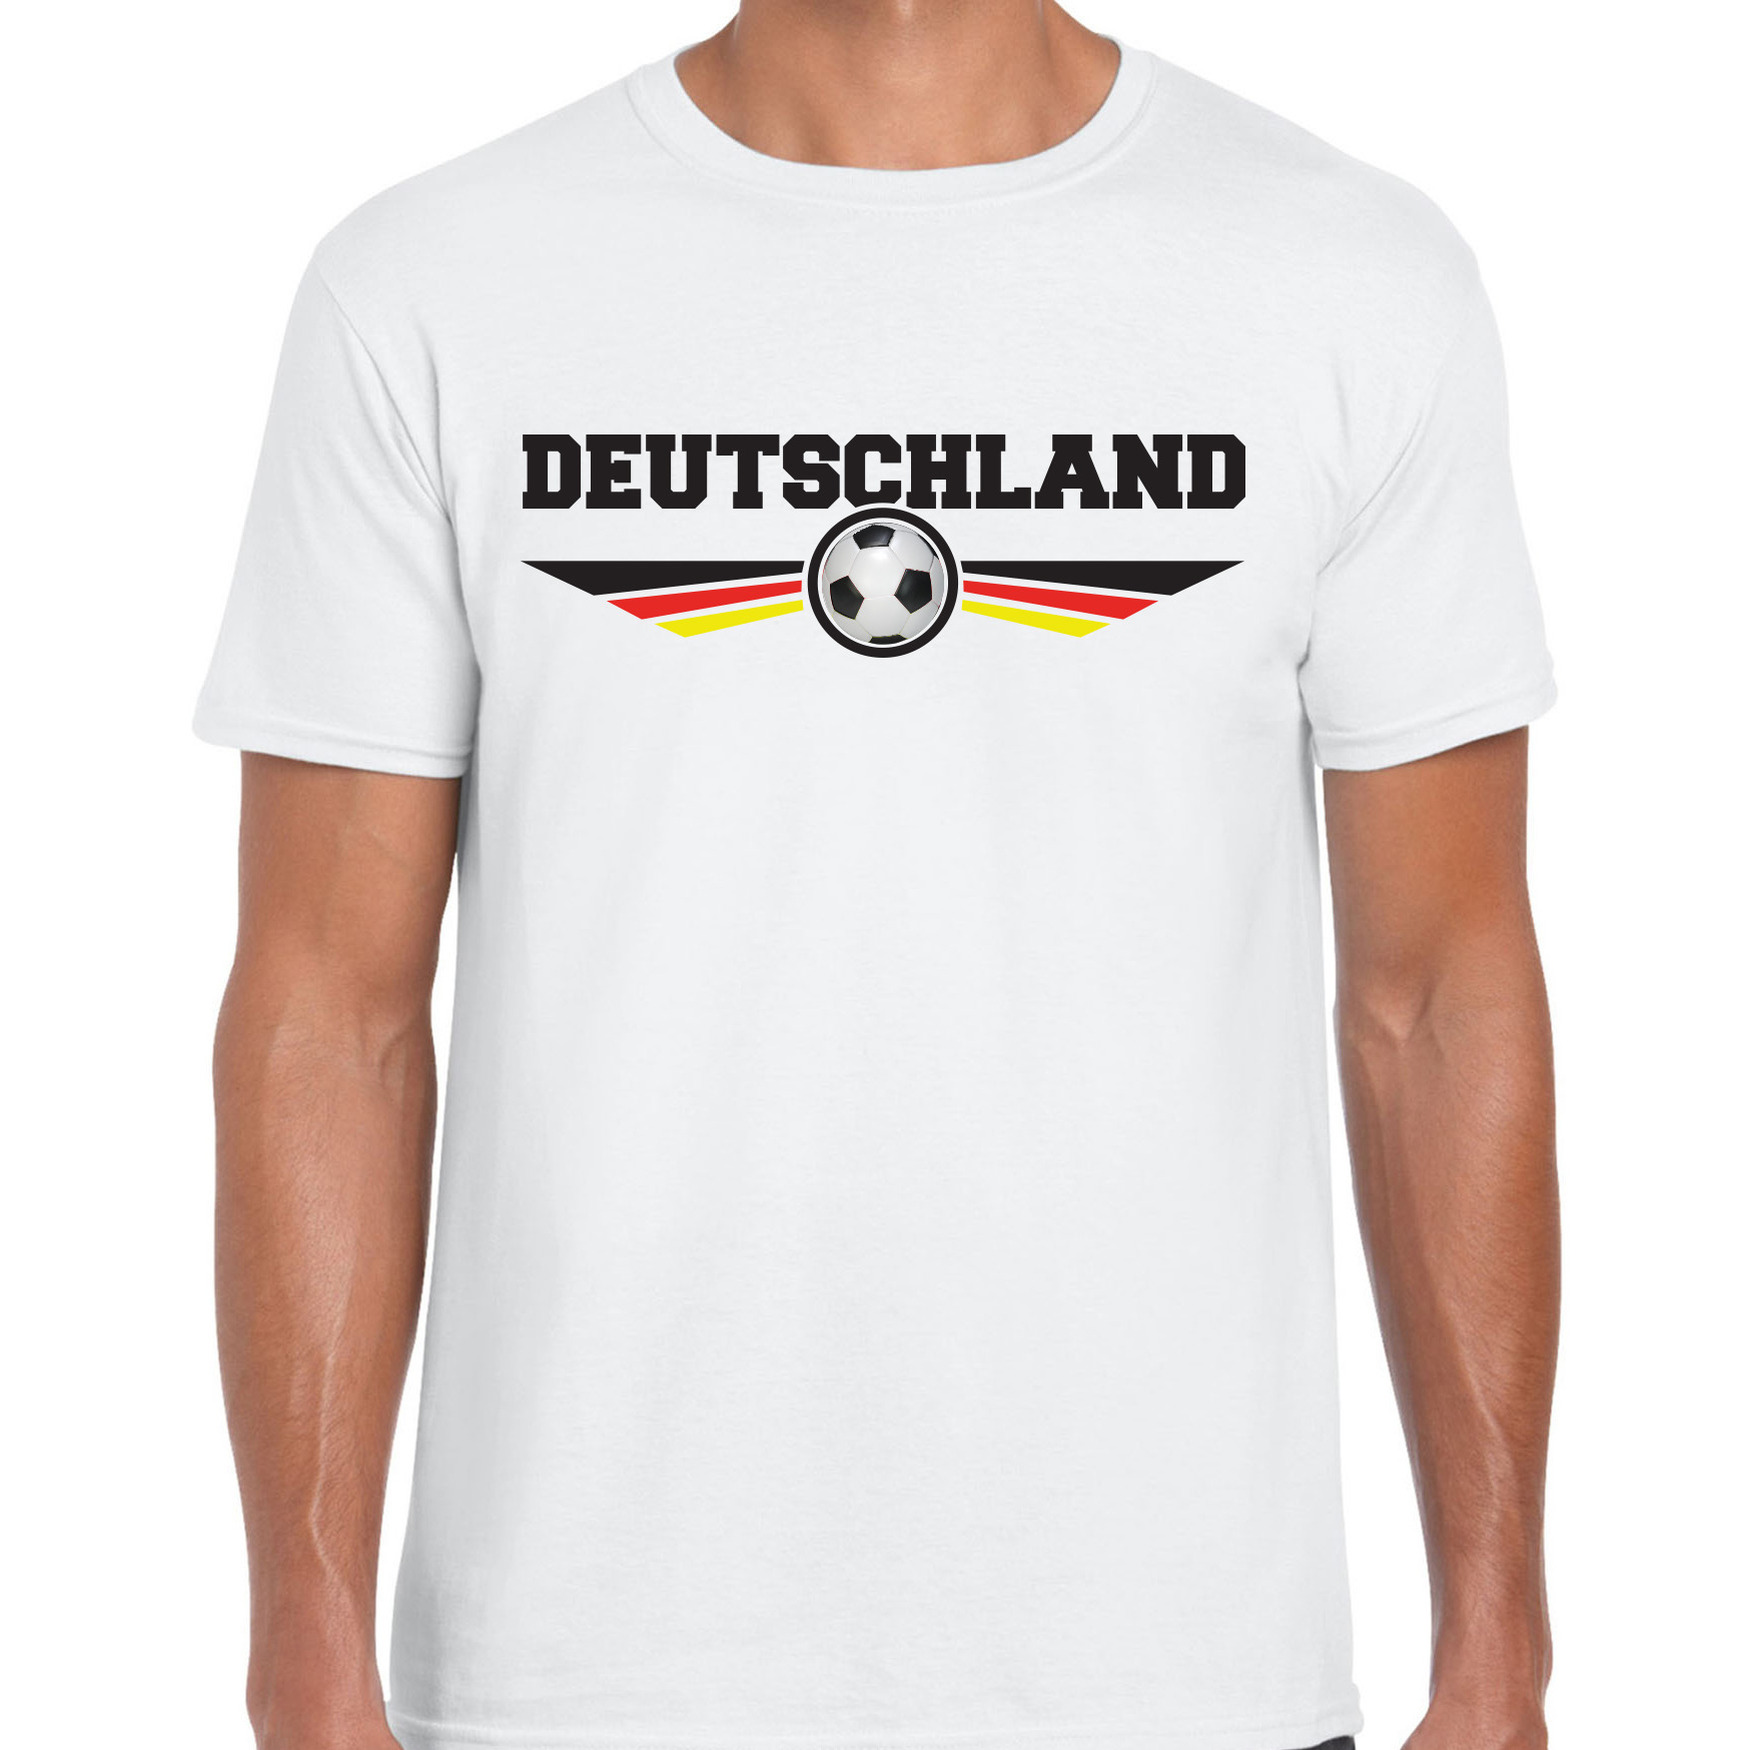 Duitsland-Deutschland landen-voetbal t-shirt wit heren